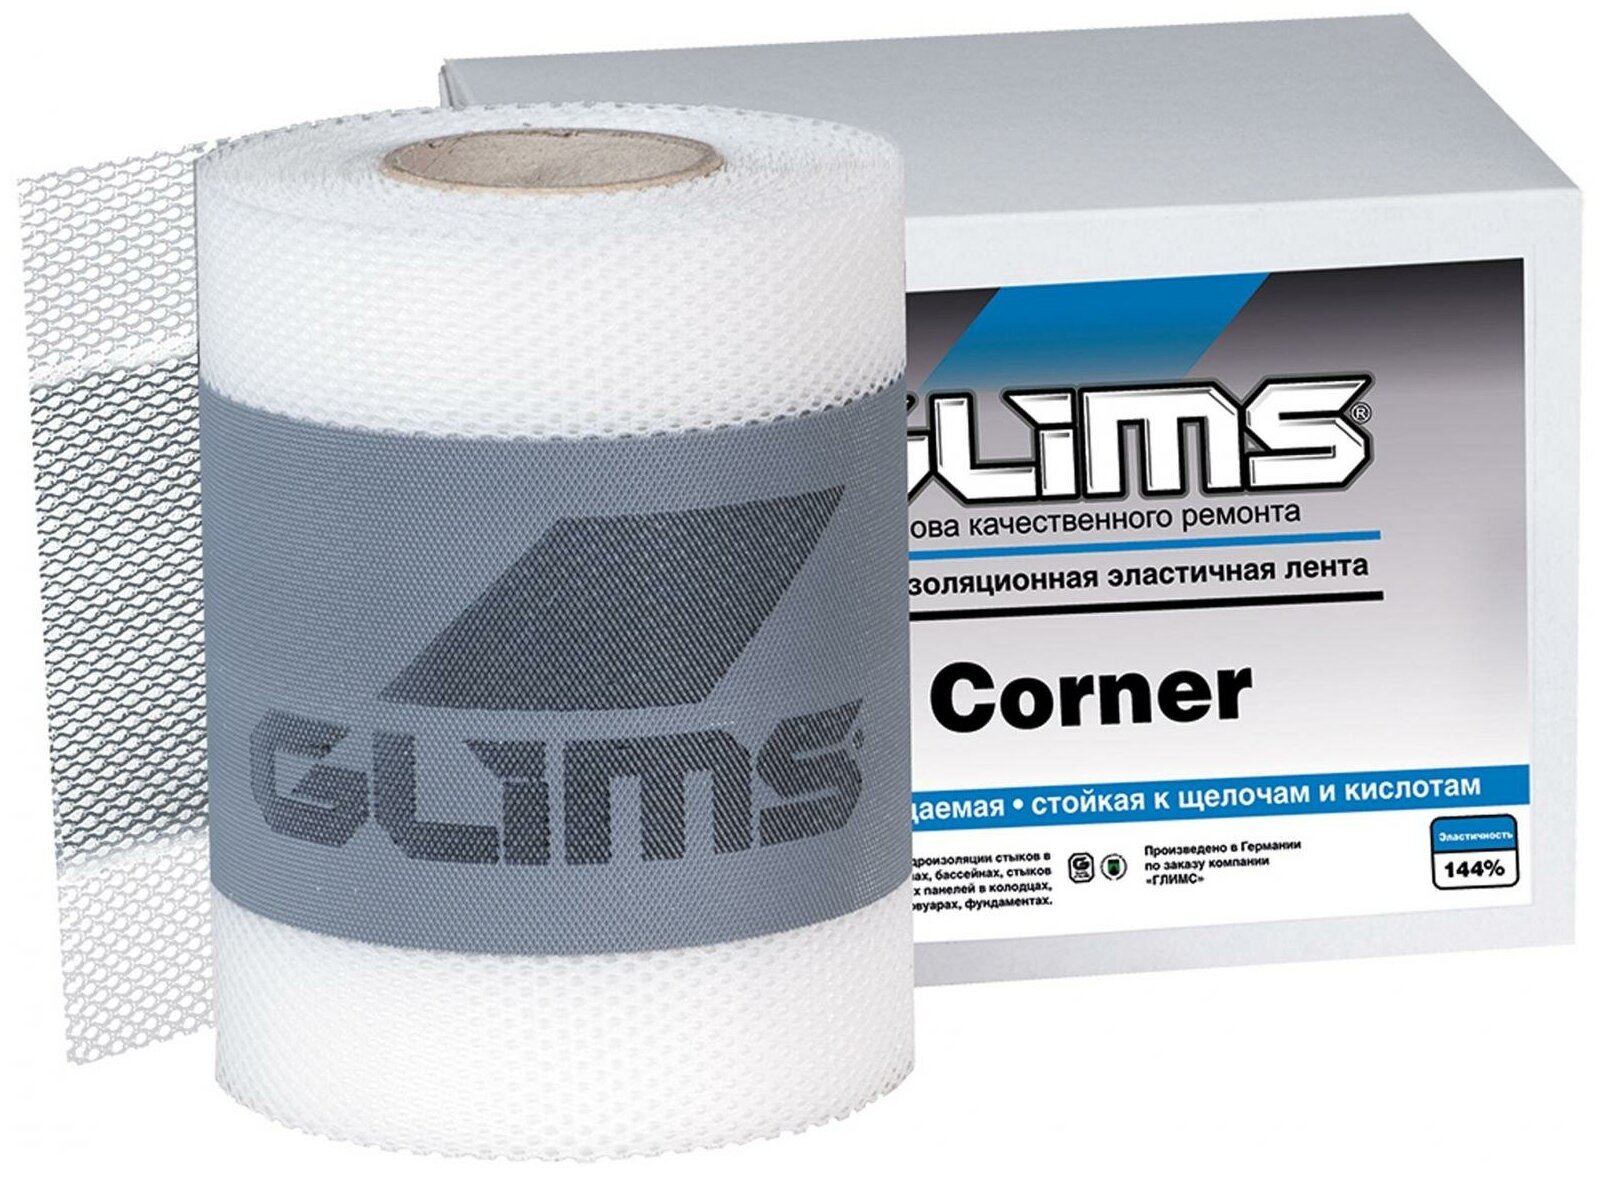 GLIMS Corner Гидроизоляционная лента 00000000041